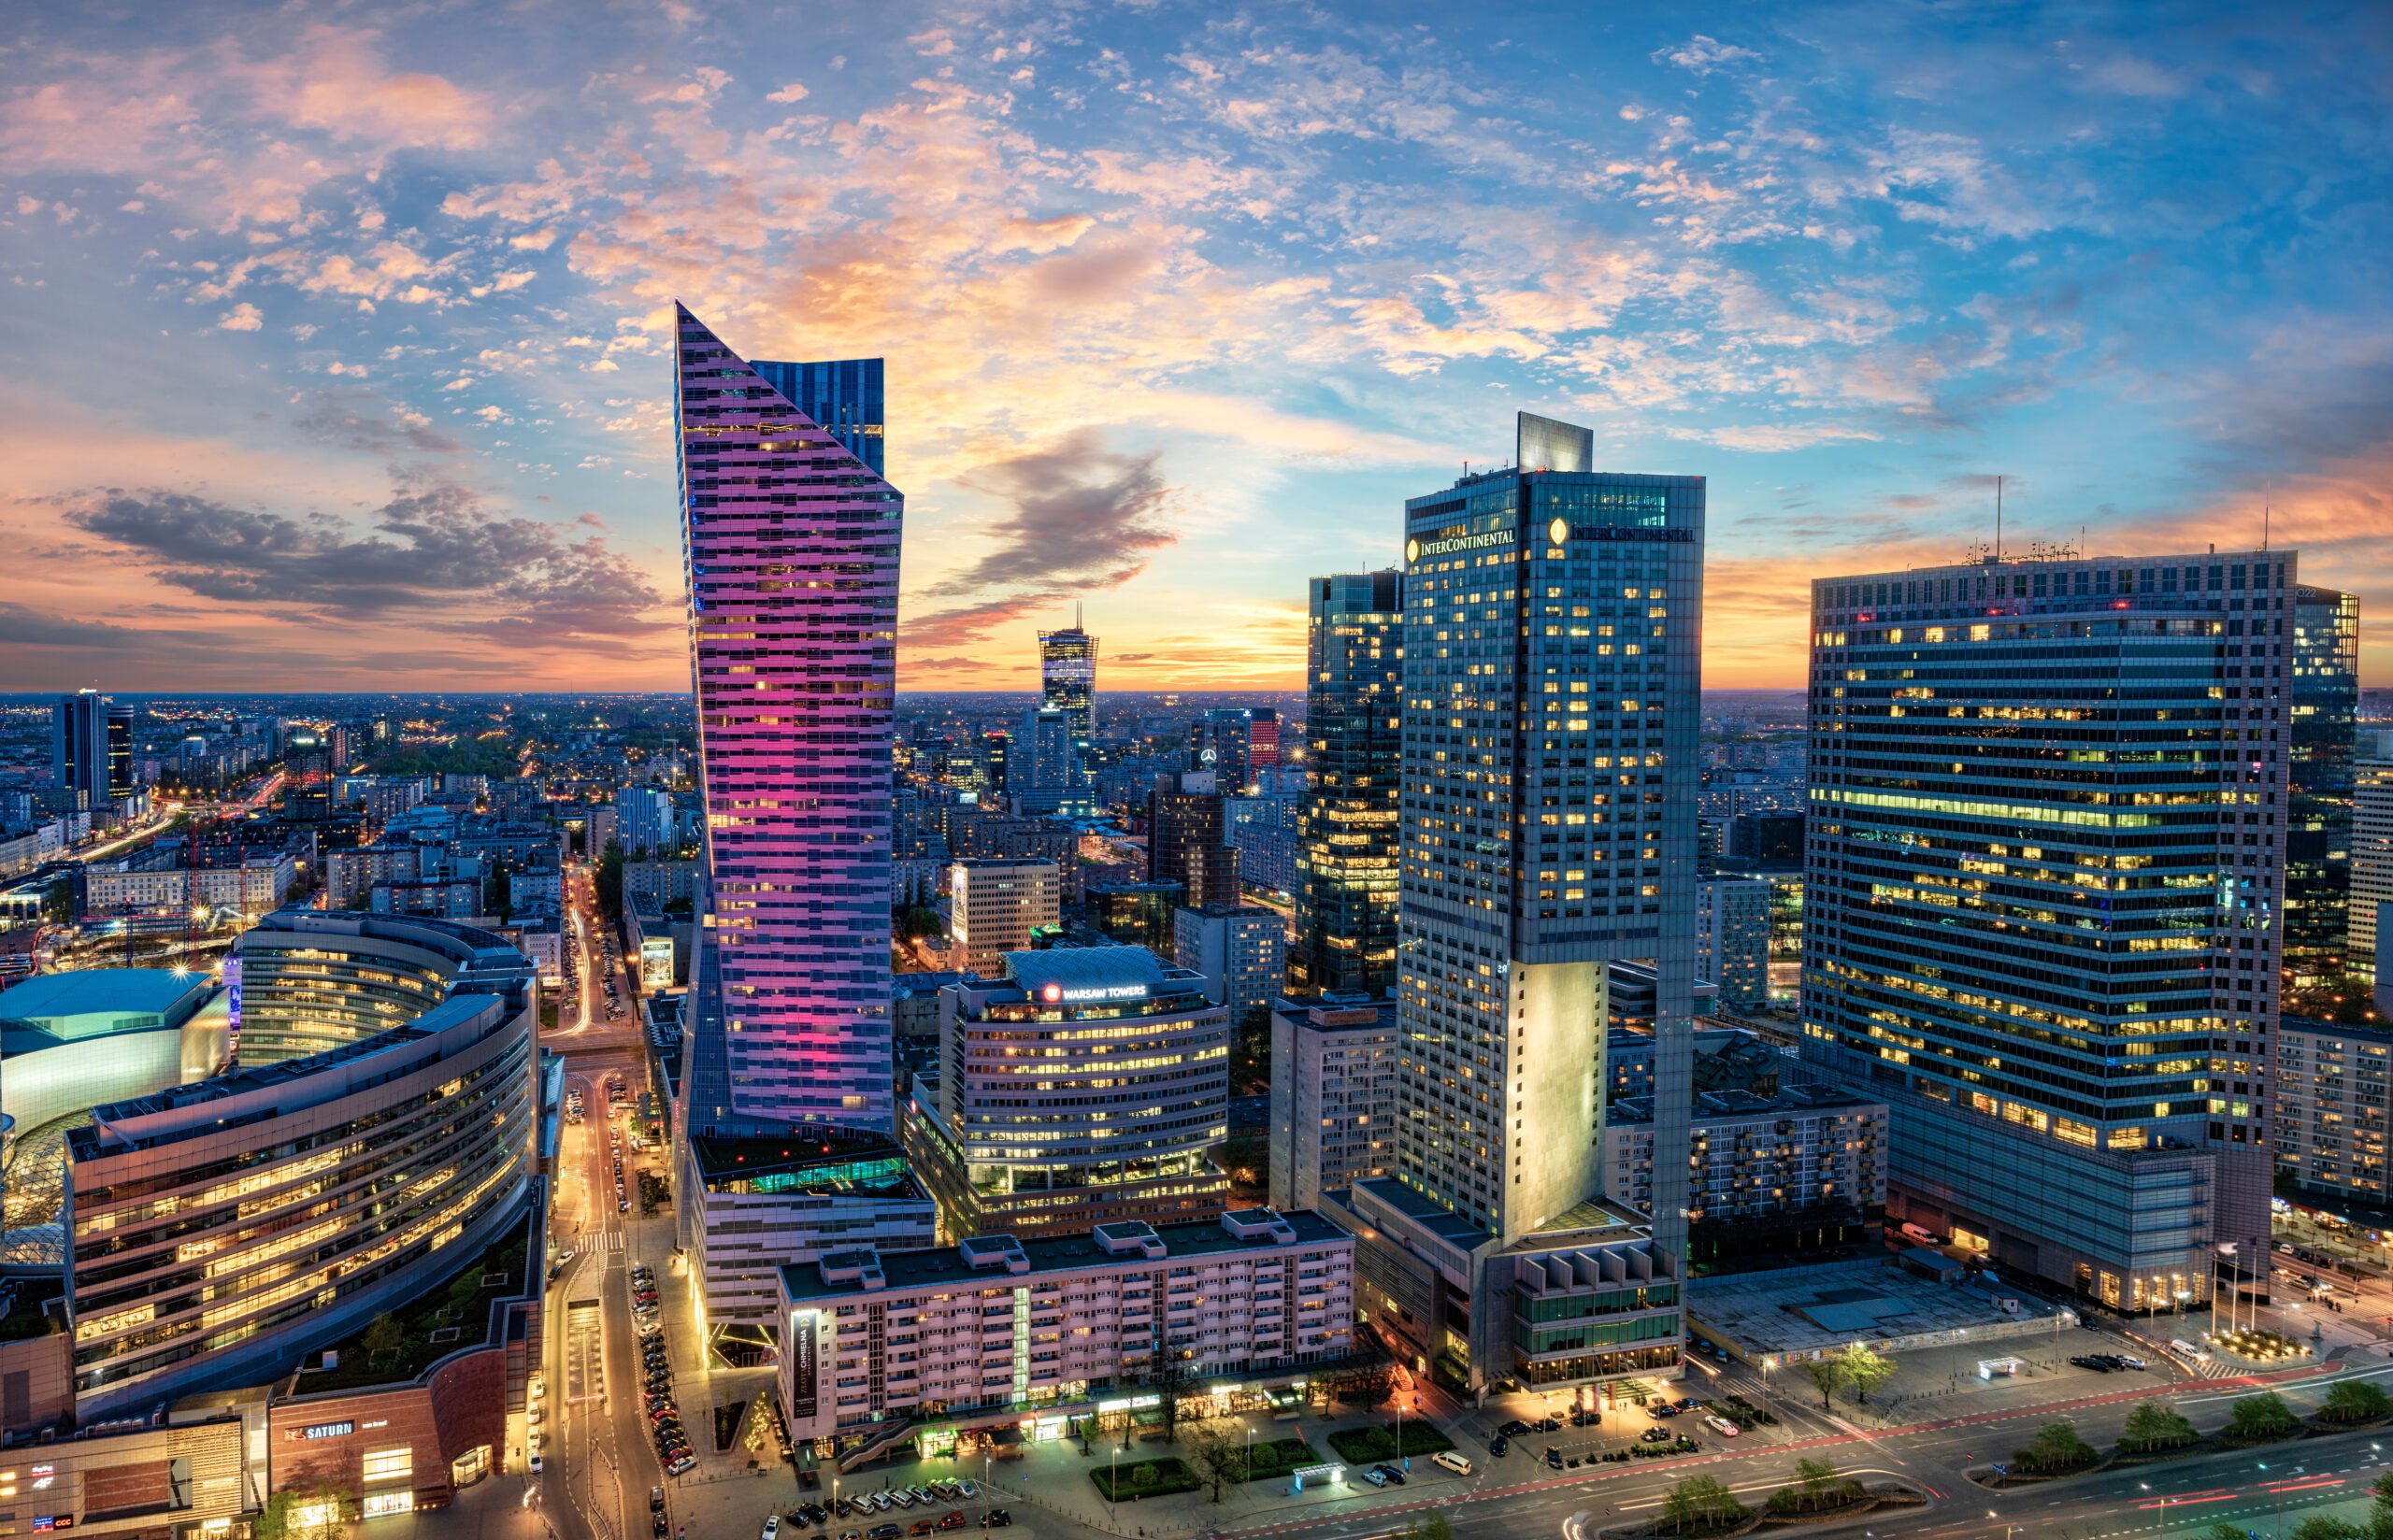 Panorama miasta z wieżowcami w tle o zmierzchu, jasne, kolorowe światła na budynkach, niebo w różowo-niebieskich barwach.